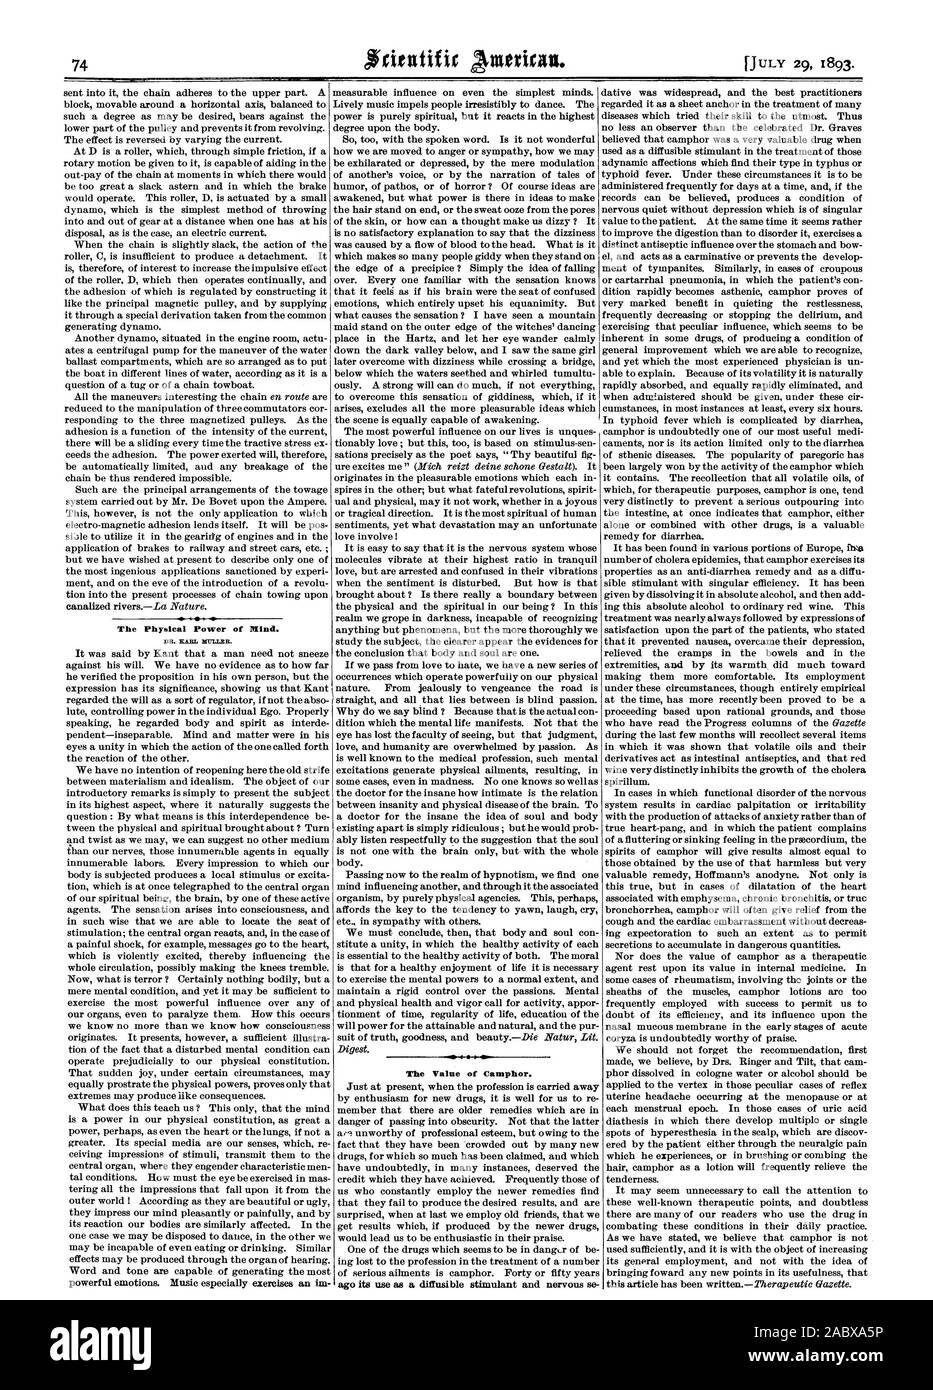 Die Phyesleal Macht des Geistes. DR. KARL MÜLLER. Der Wert von Kampfer. Vor seiner Verwendung als frei diffundierbaren Stimulans und nervöse se, Scientific American, 1893-07-29 Stockfoto